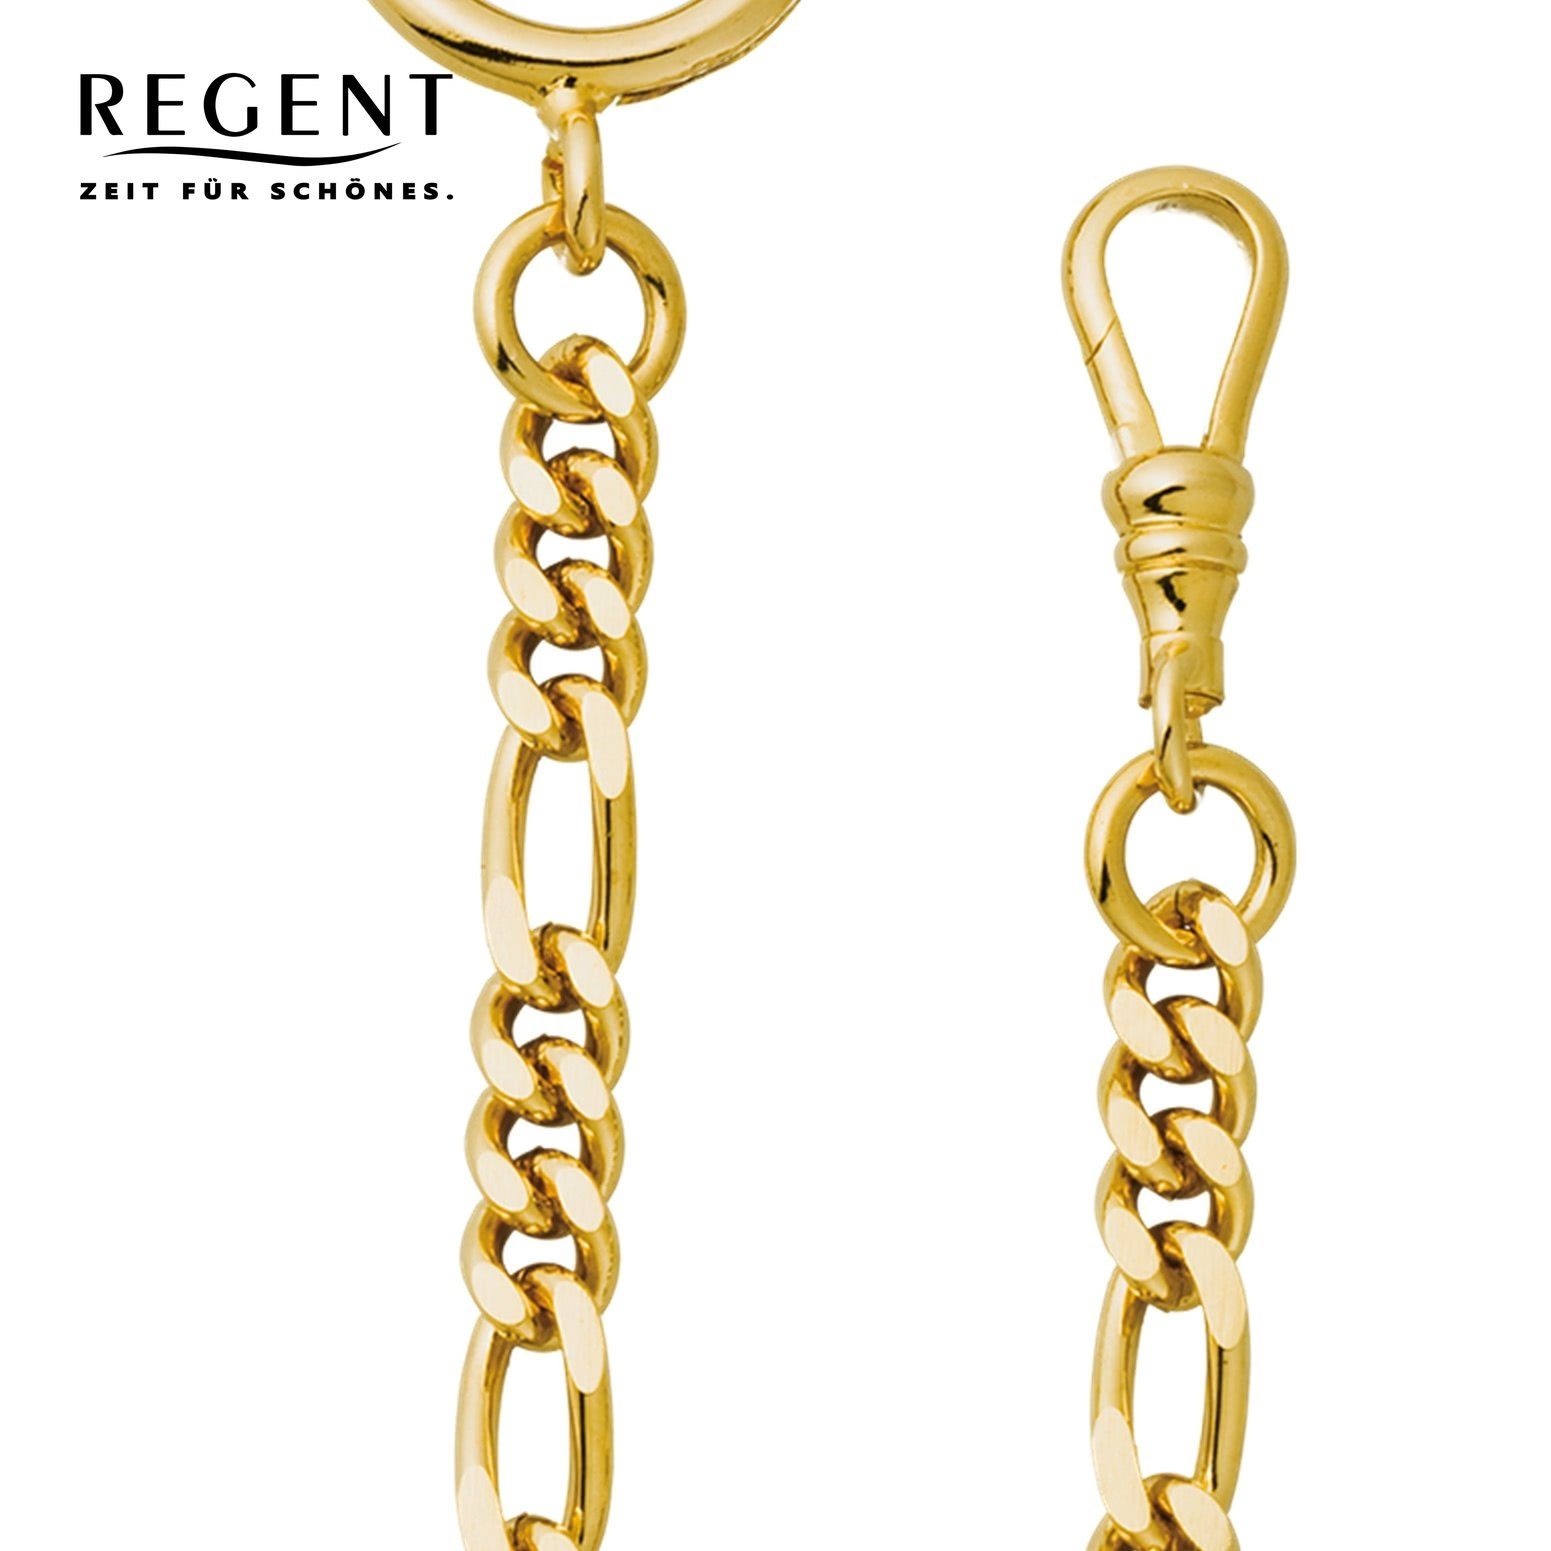 Herren Taschenuhren-Kette Figaro, Regent Elegant P-48 Kettenuhr Taschenuhrenkette, Regent 5mm